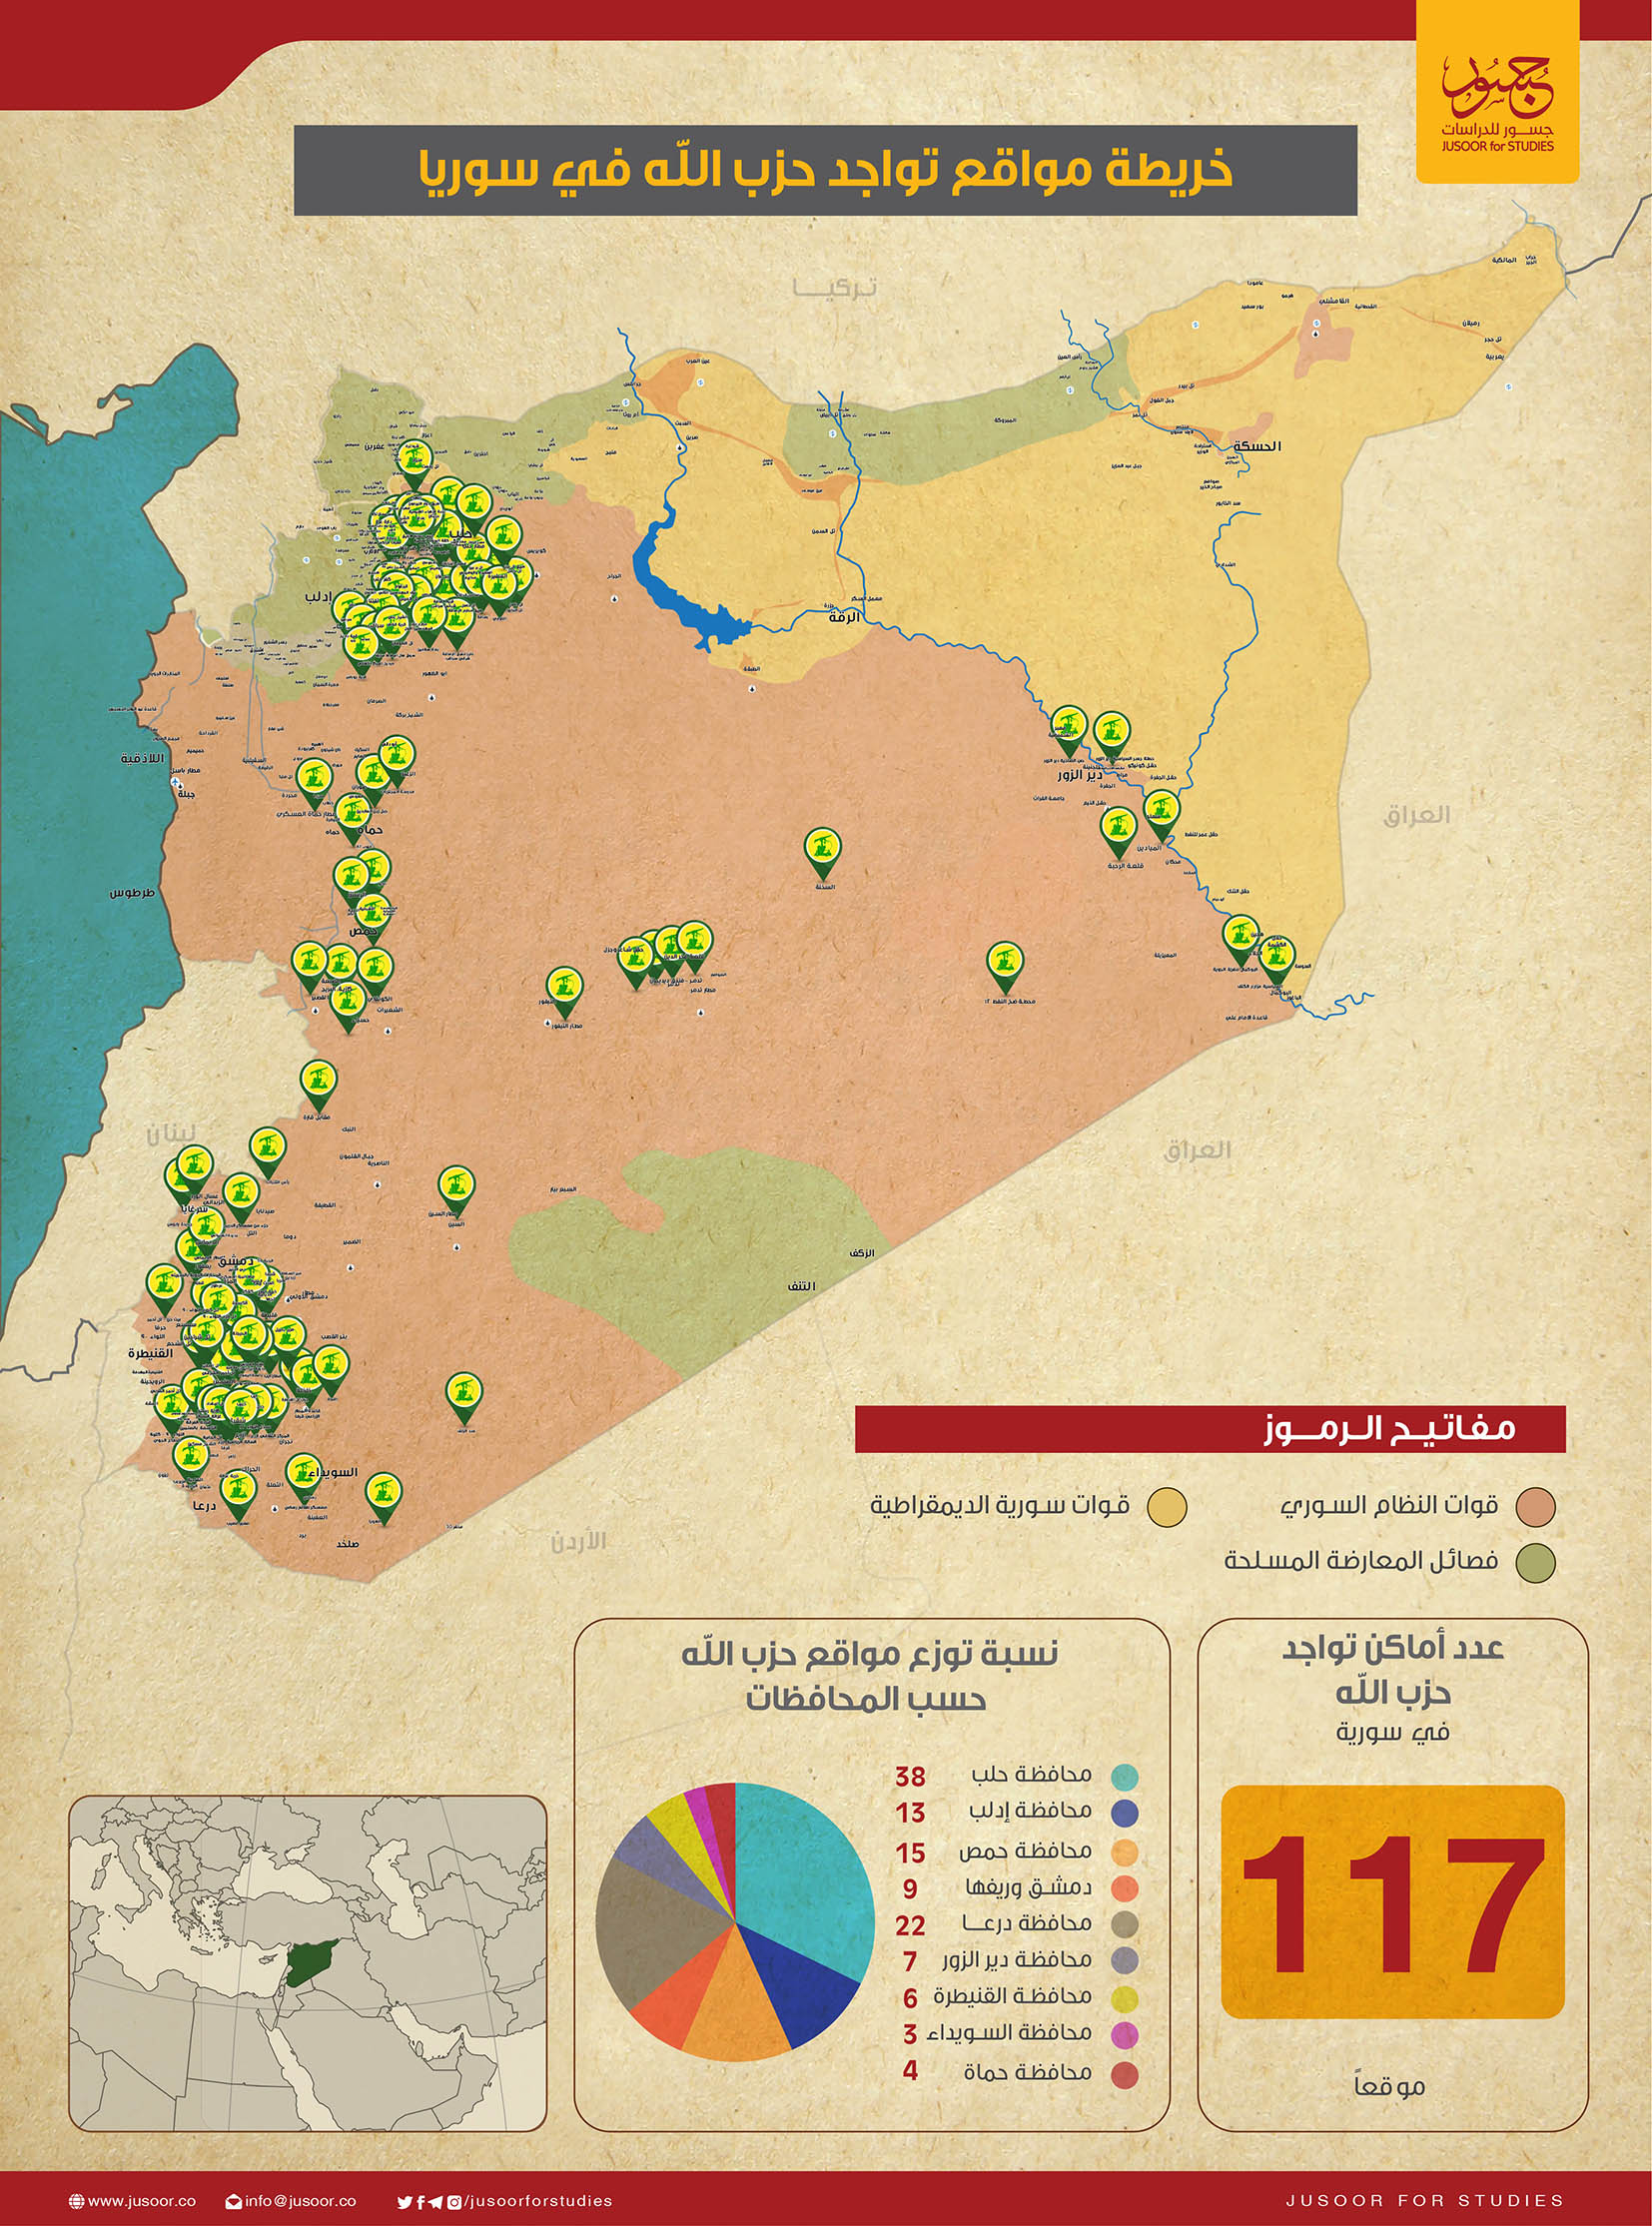 سياسة/مواقع حزب الله في سورية/(مركز جسور)